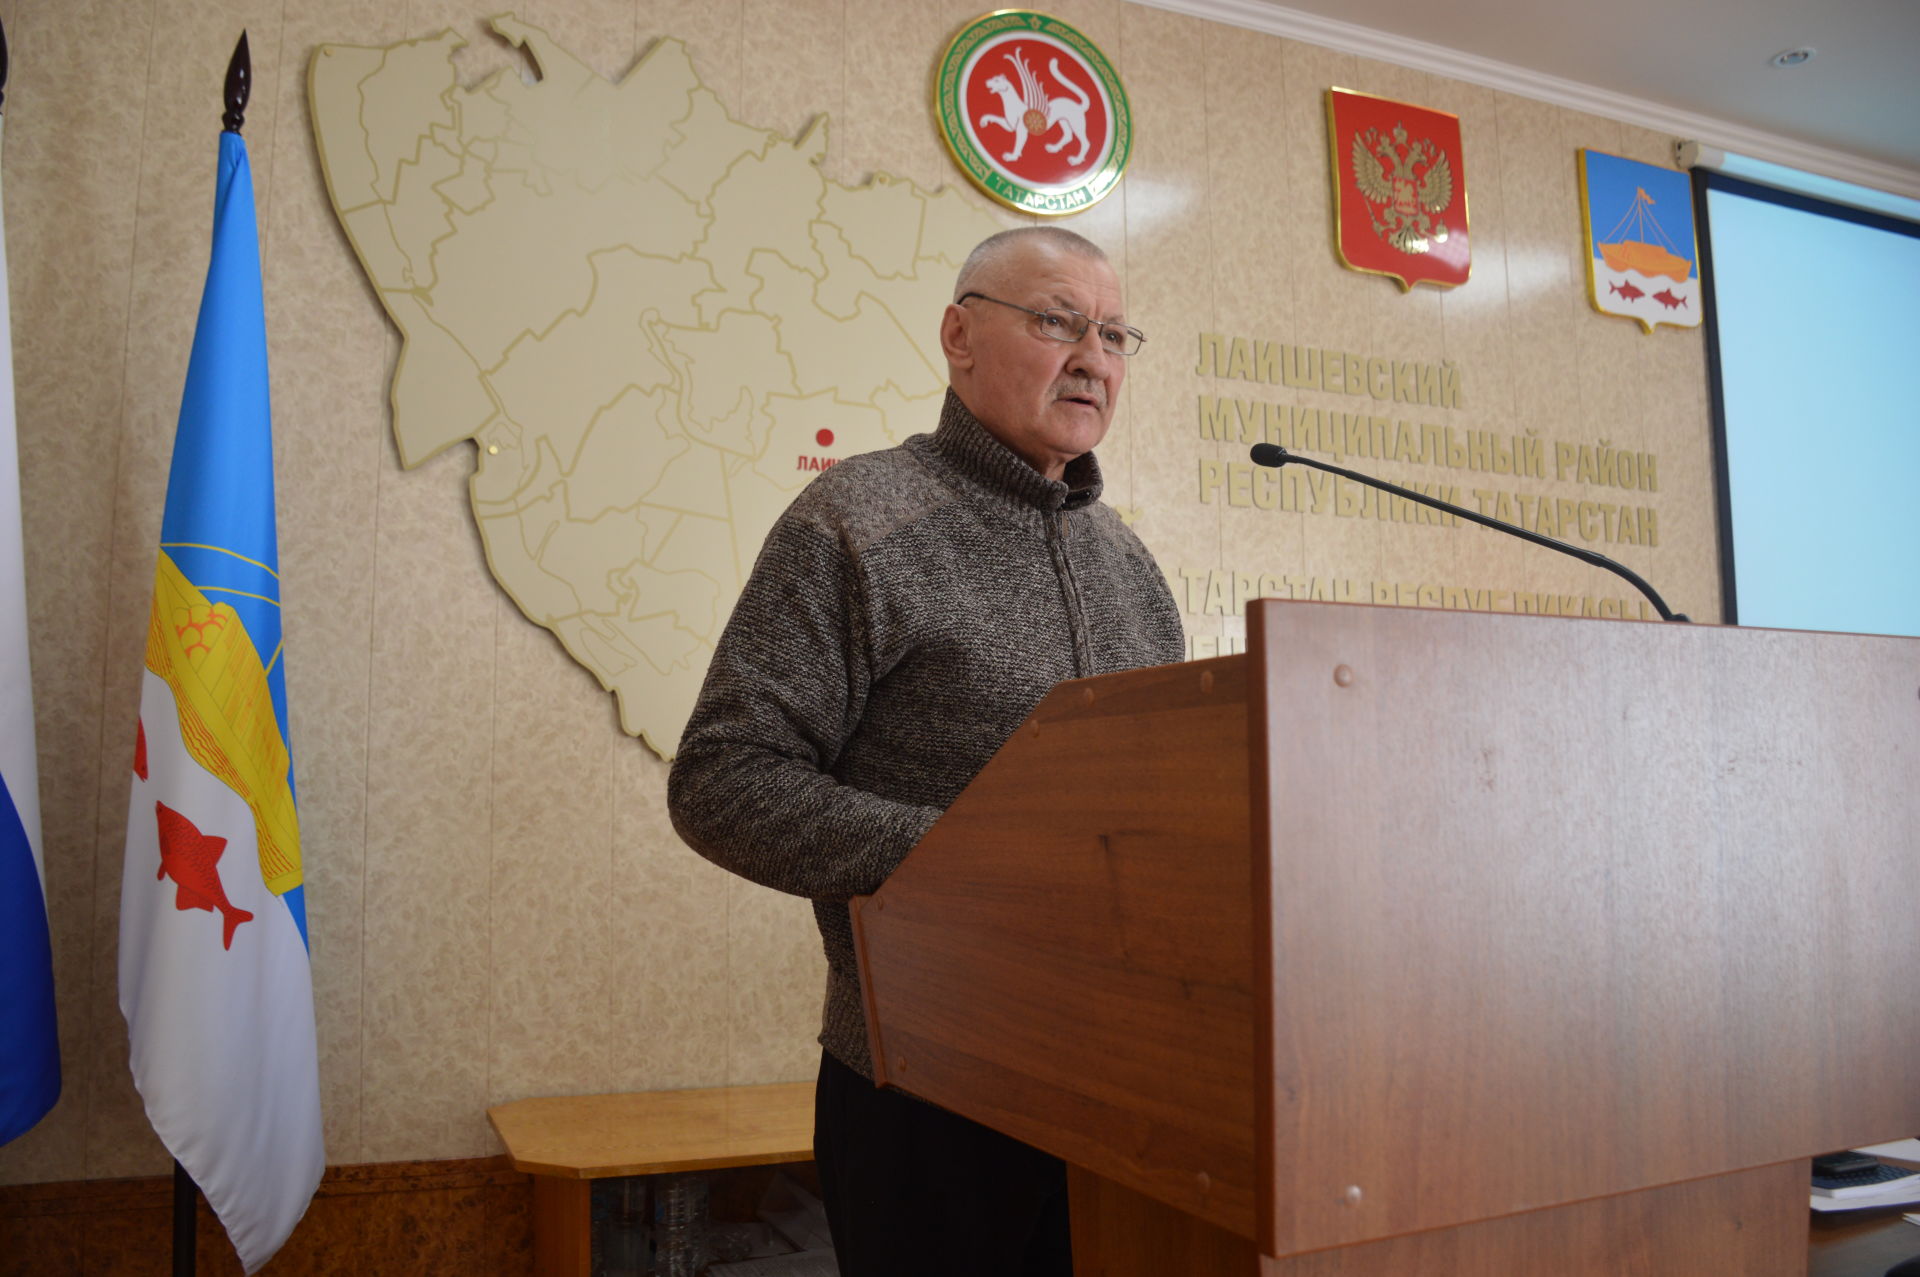 В Лаишево состоялось заседание районной комиссии по безопасности движения